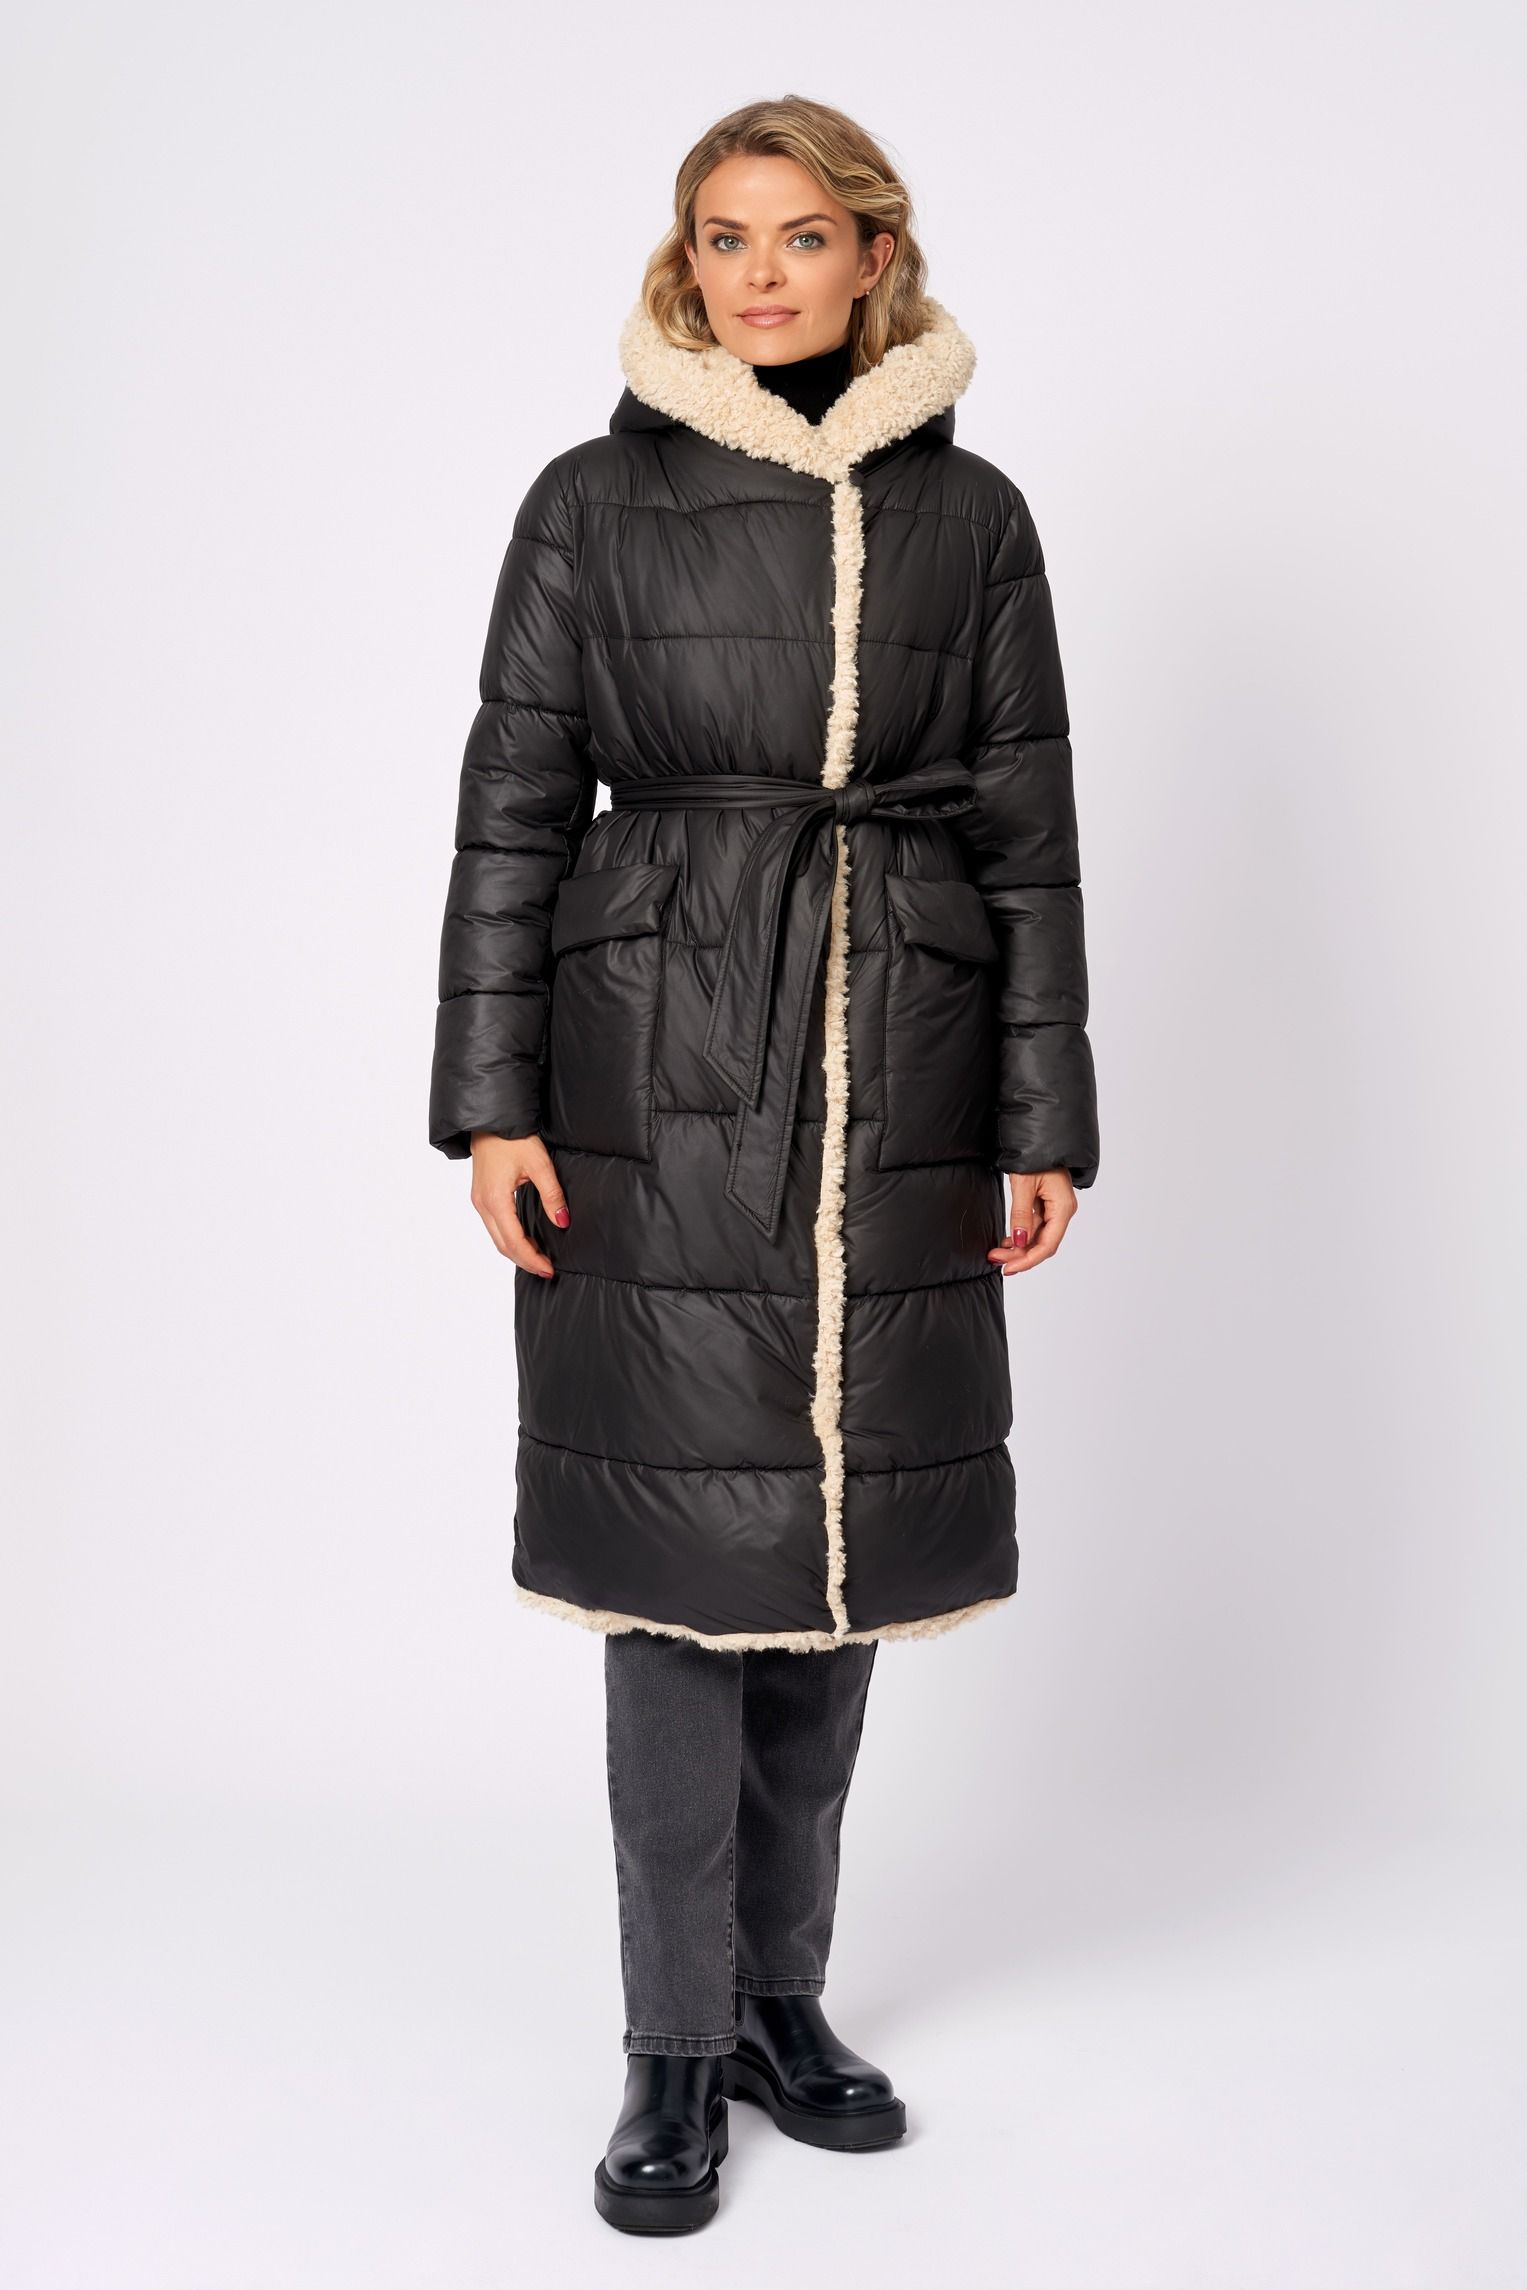 Пальто женское ElectraStyle КТ/ВО/П-32001 черное 44 RU